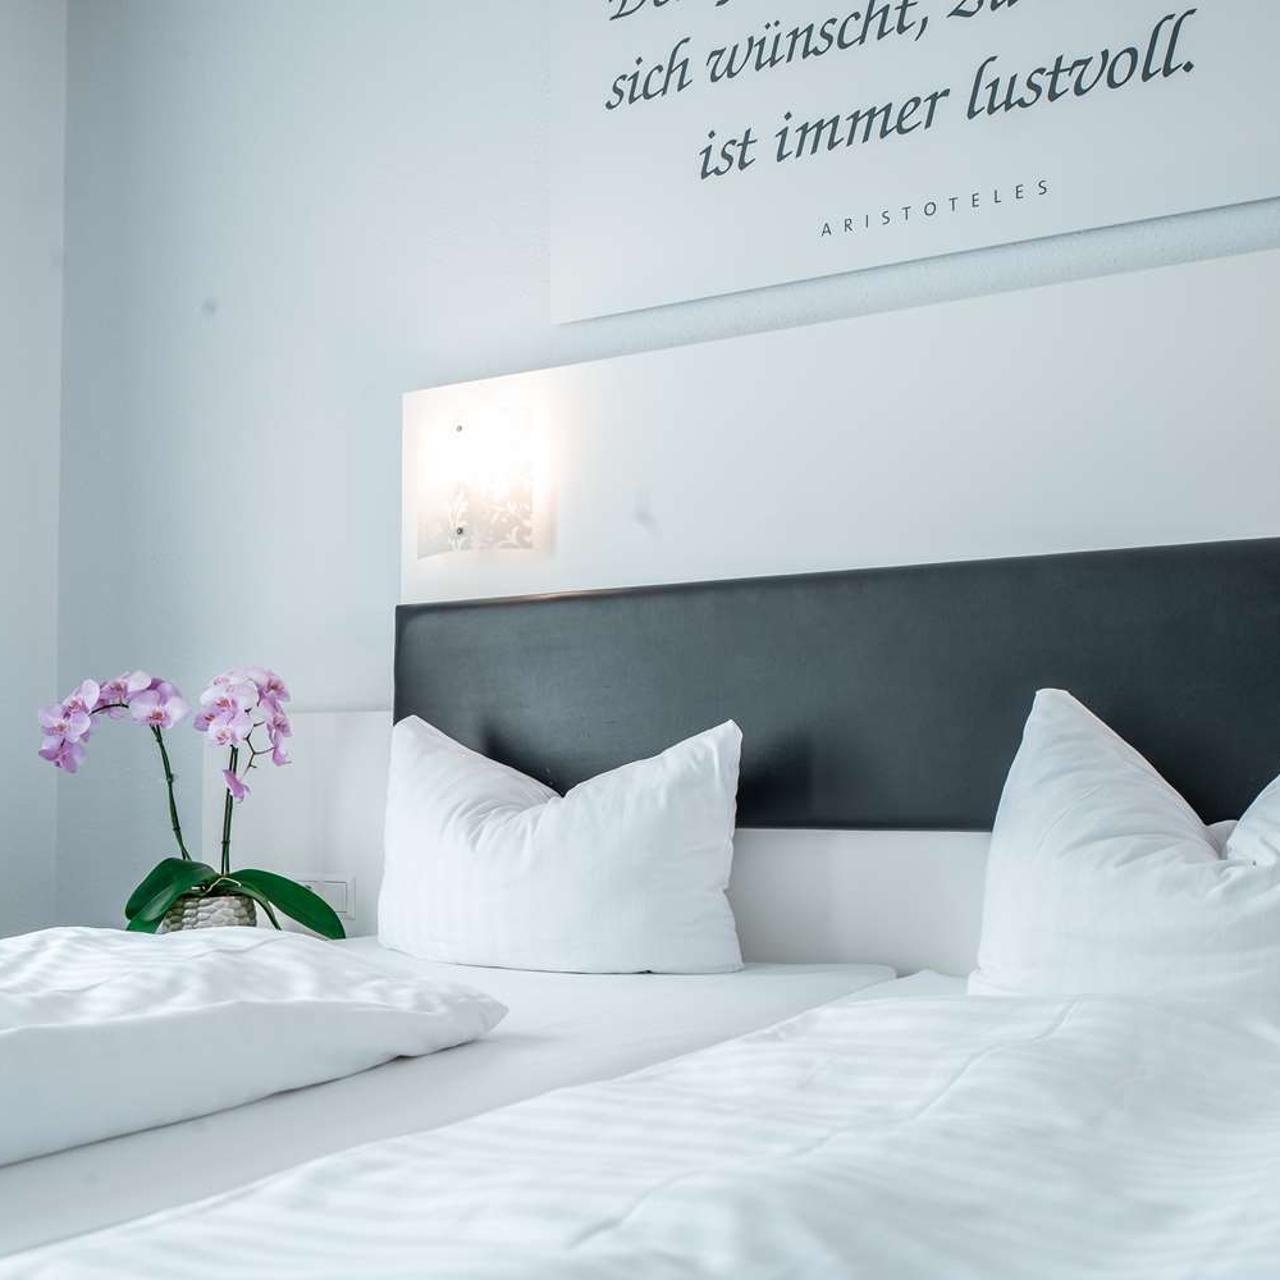 Sure Hotel by Best Western Bad Dürrheim bei HRS günstig buchen